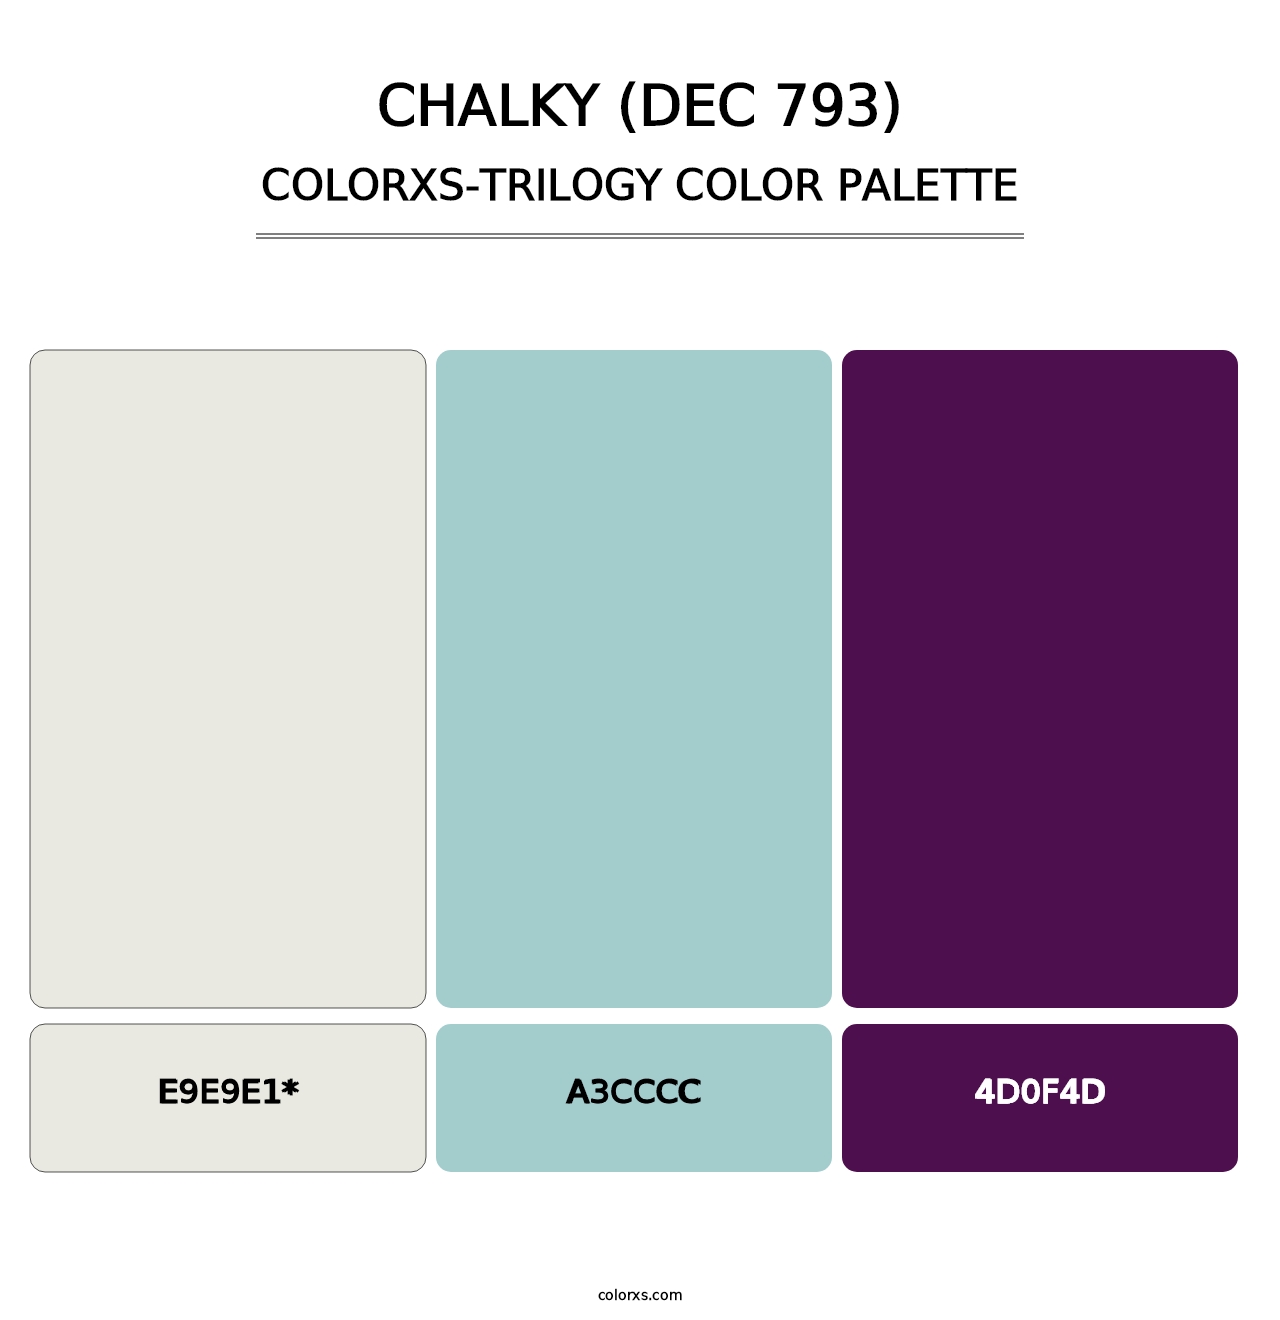 Chalky (DEC 793) - Colorxs Trilogy Palette